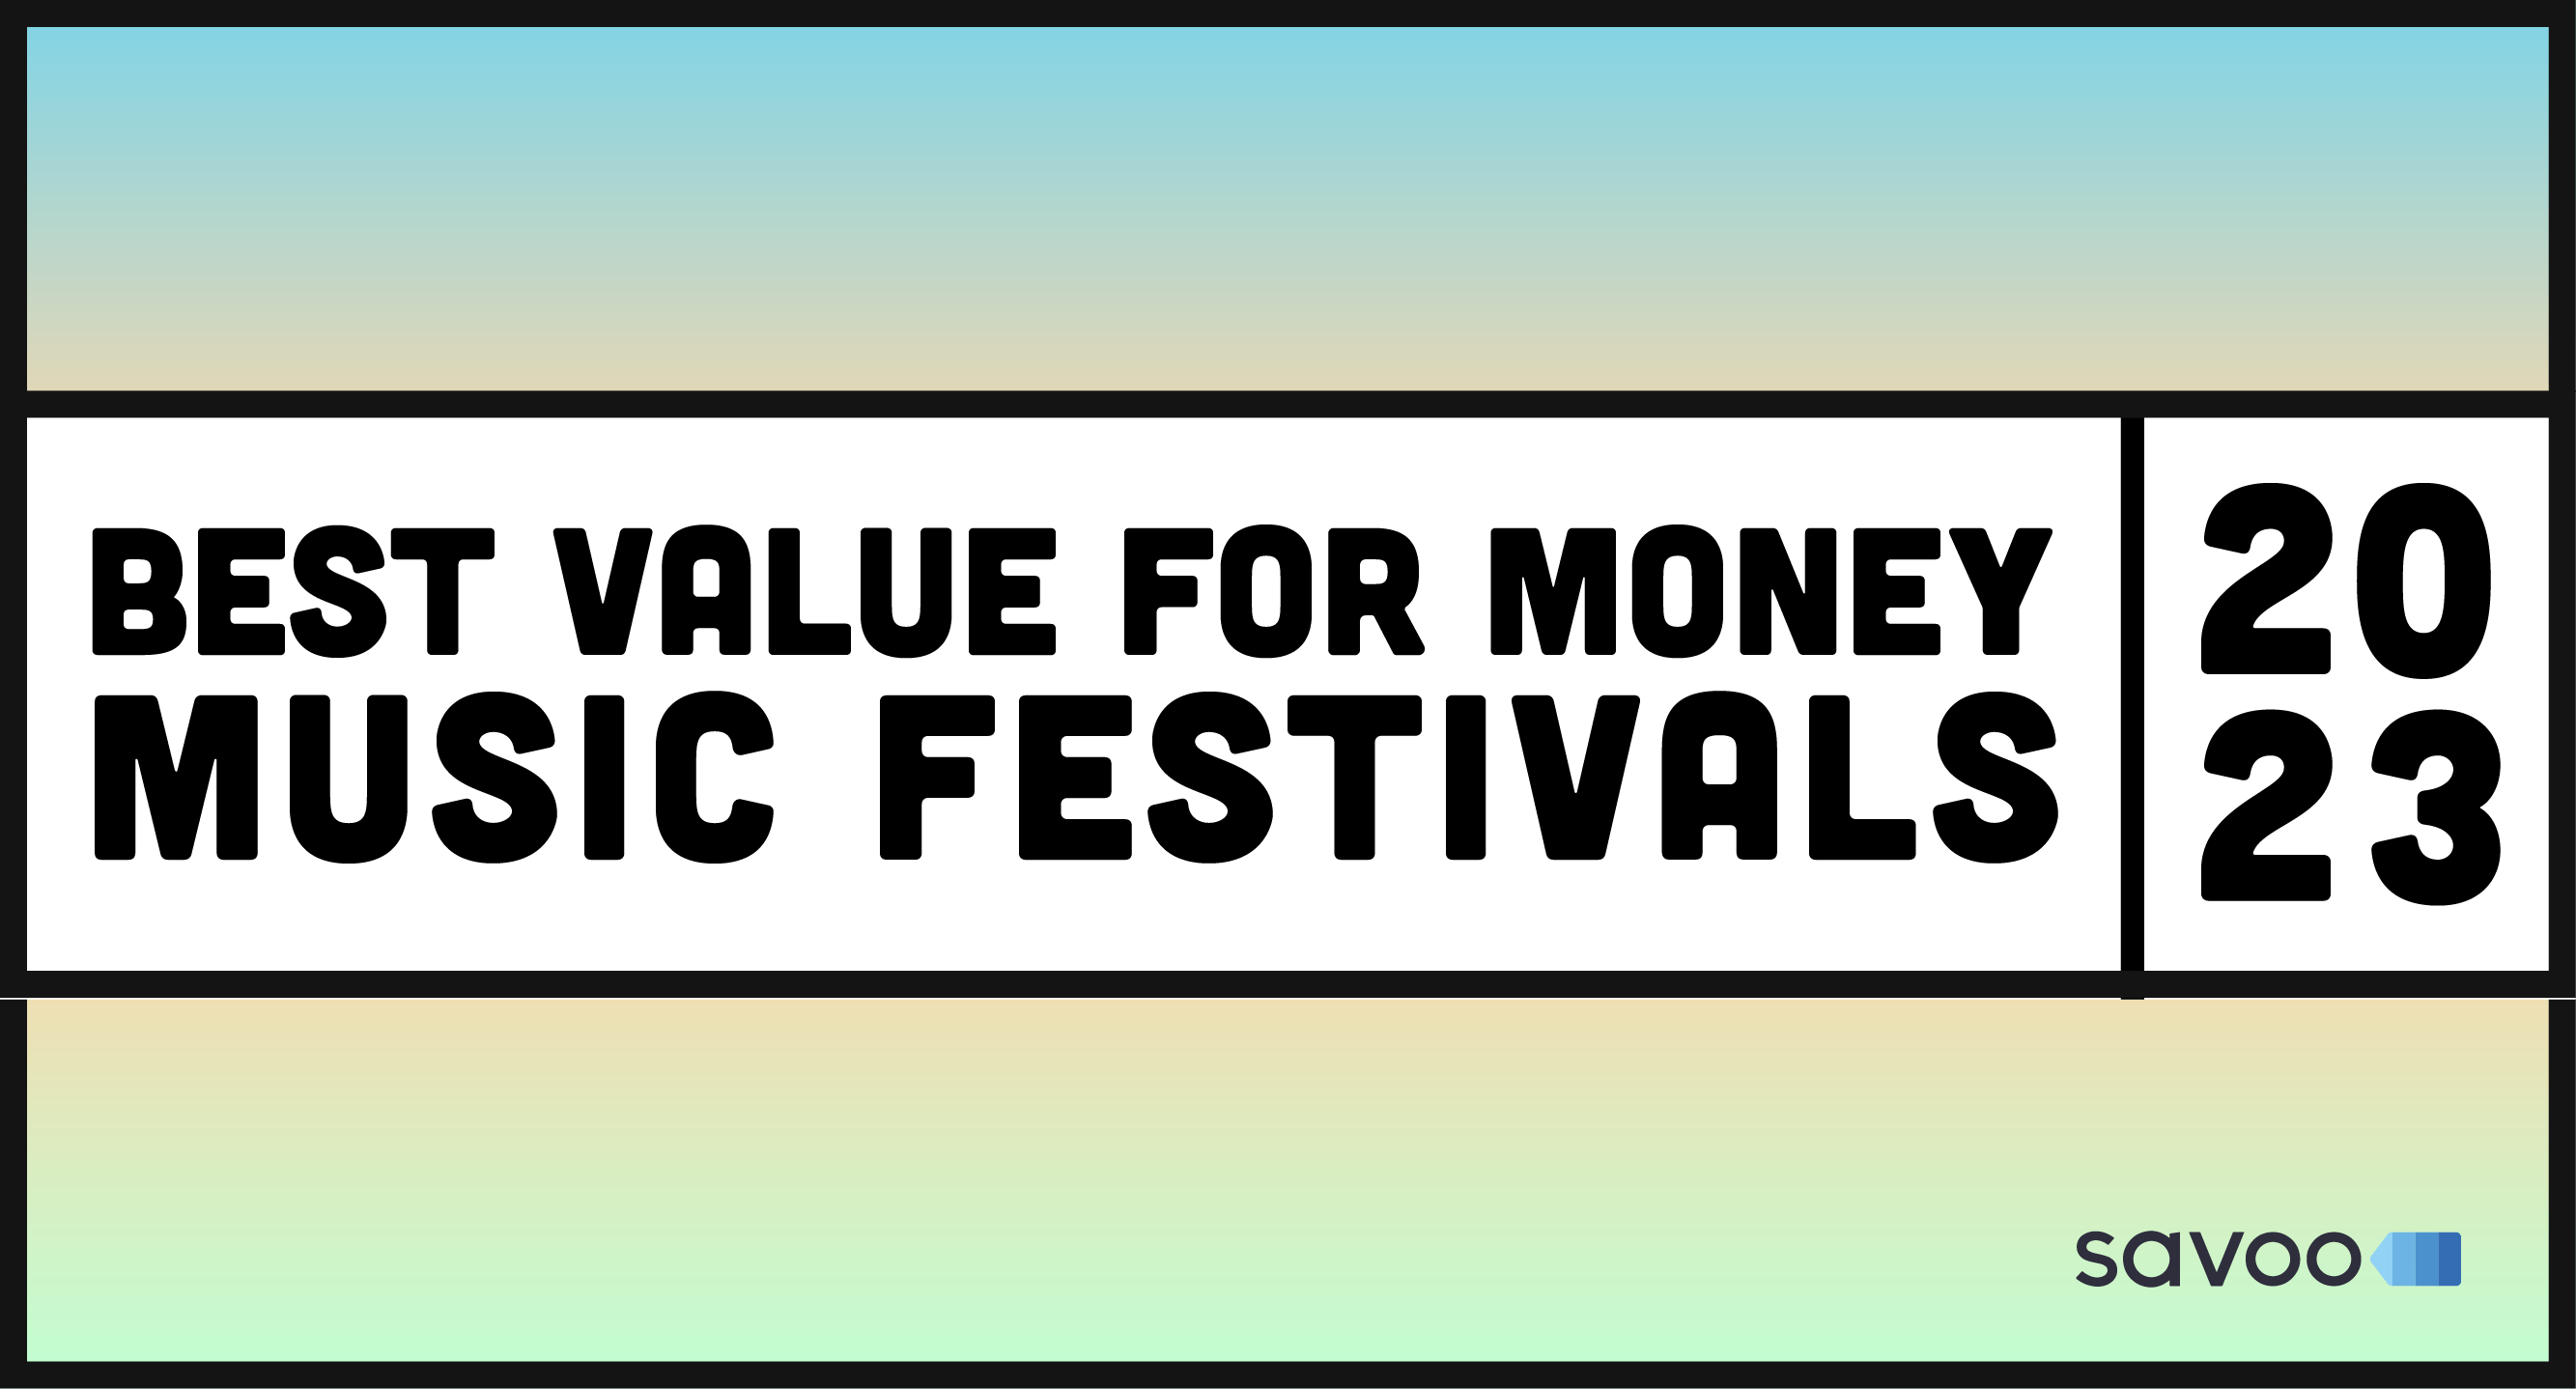 The Best Value for Money Music Festivals in 2023